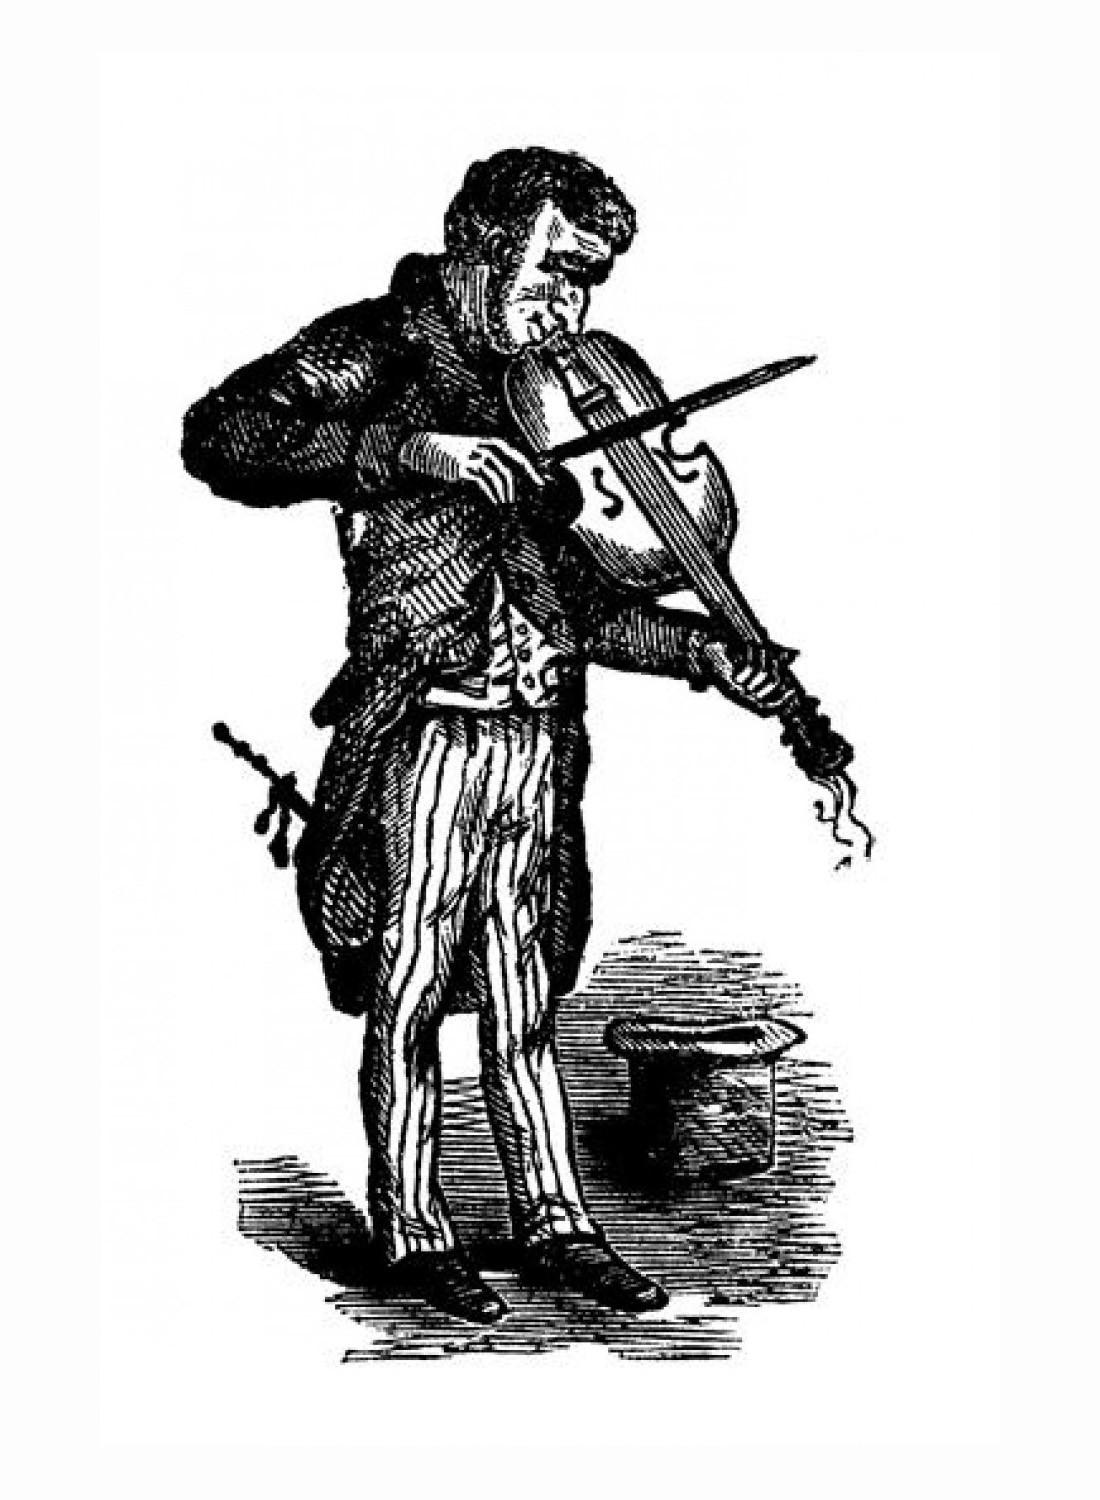 Holzschnittartige schwarz-weiss Illustration eines Geigenspielers